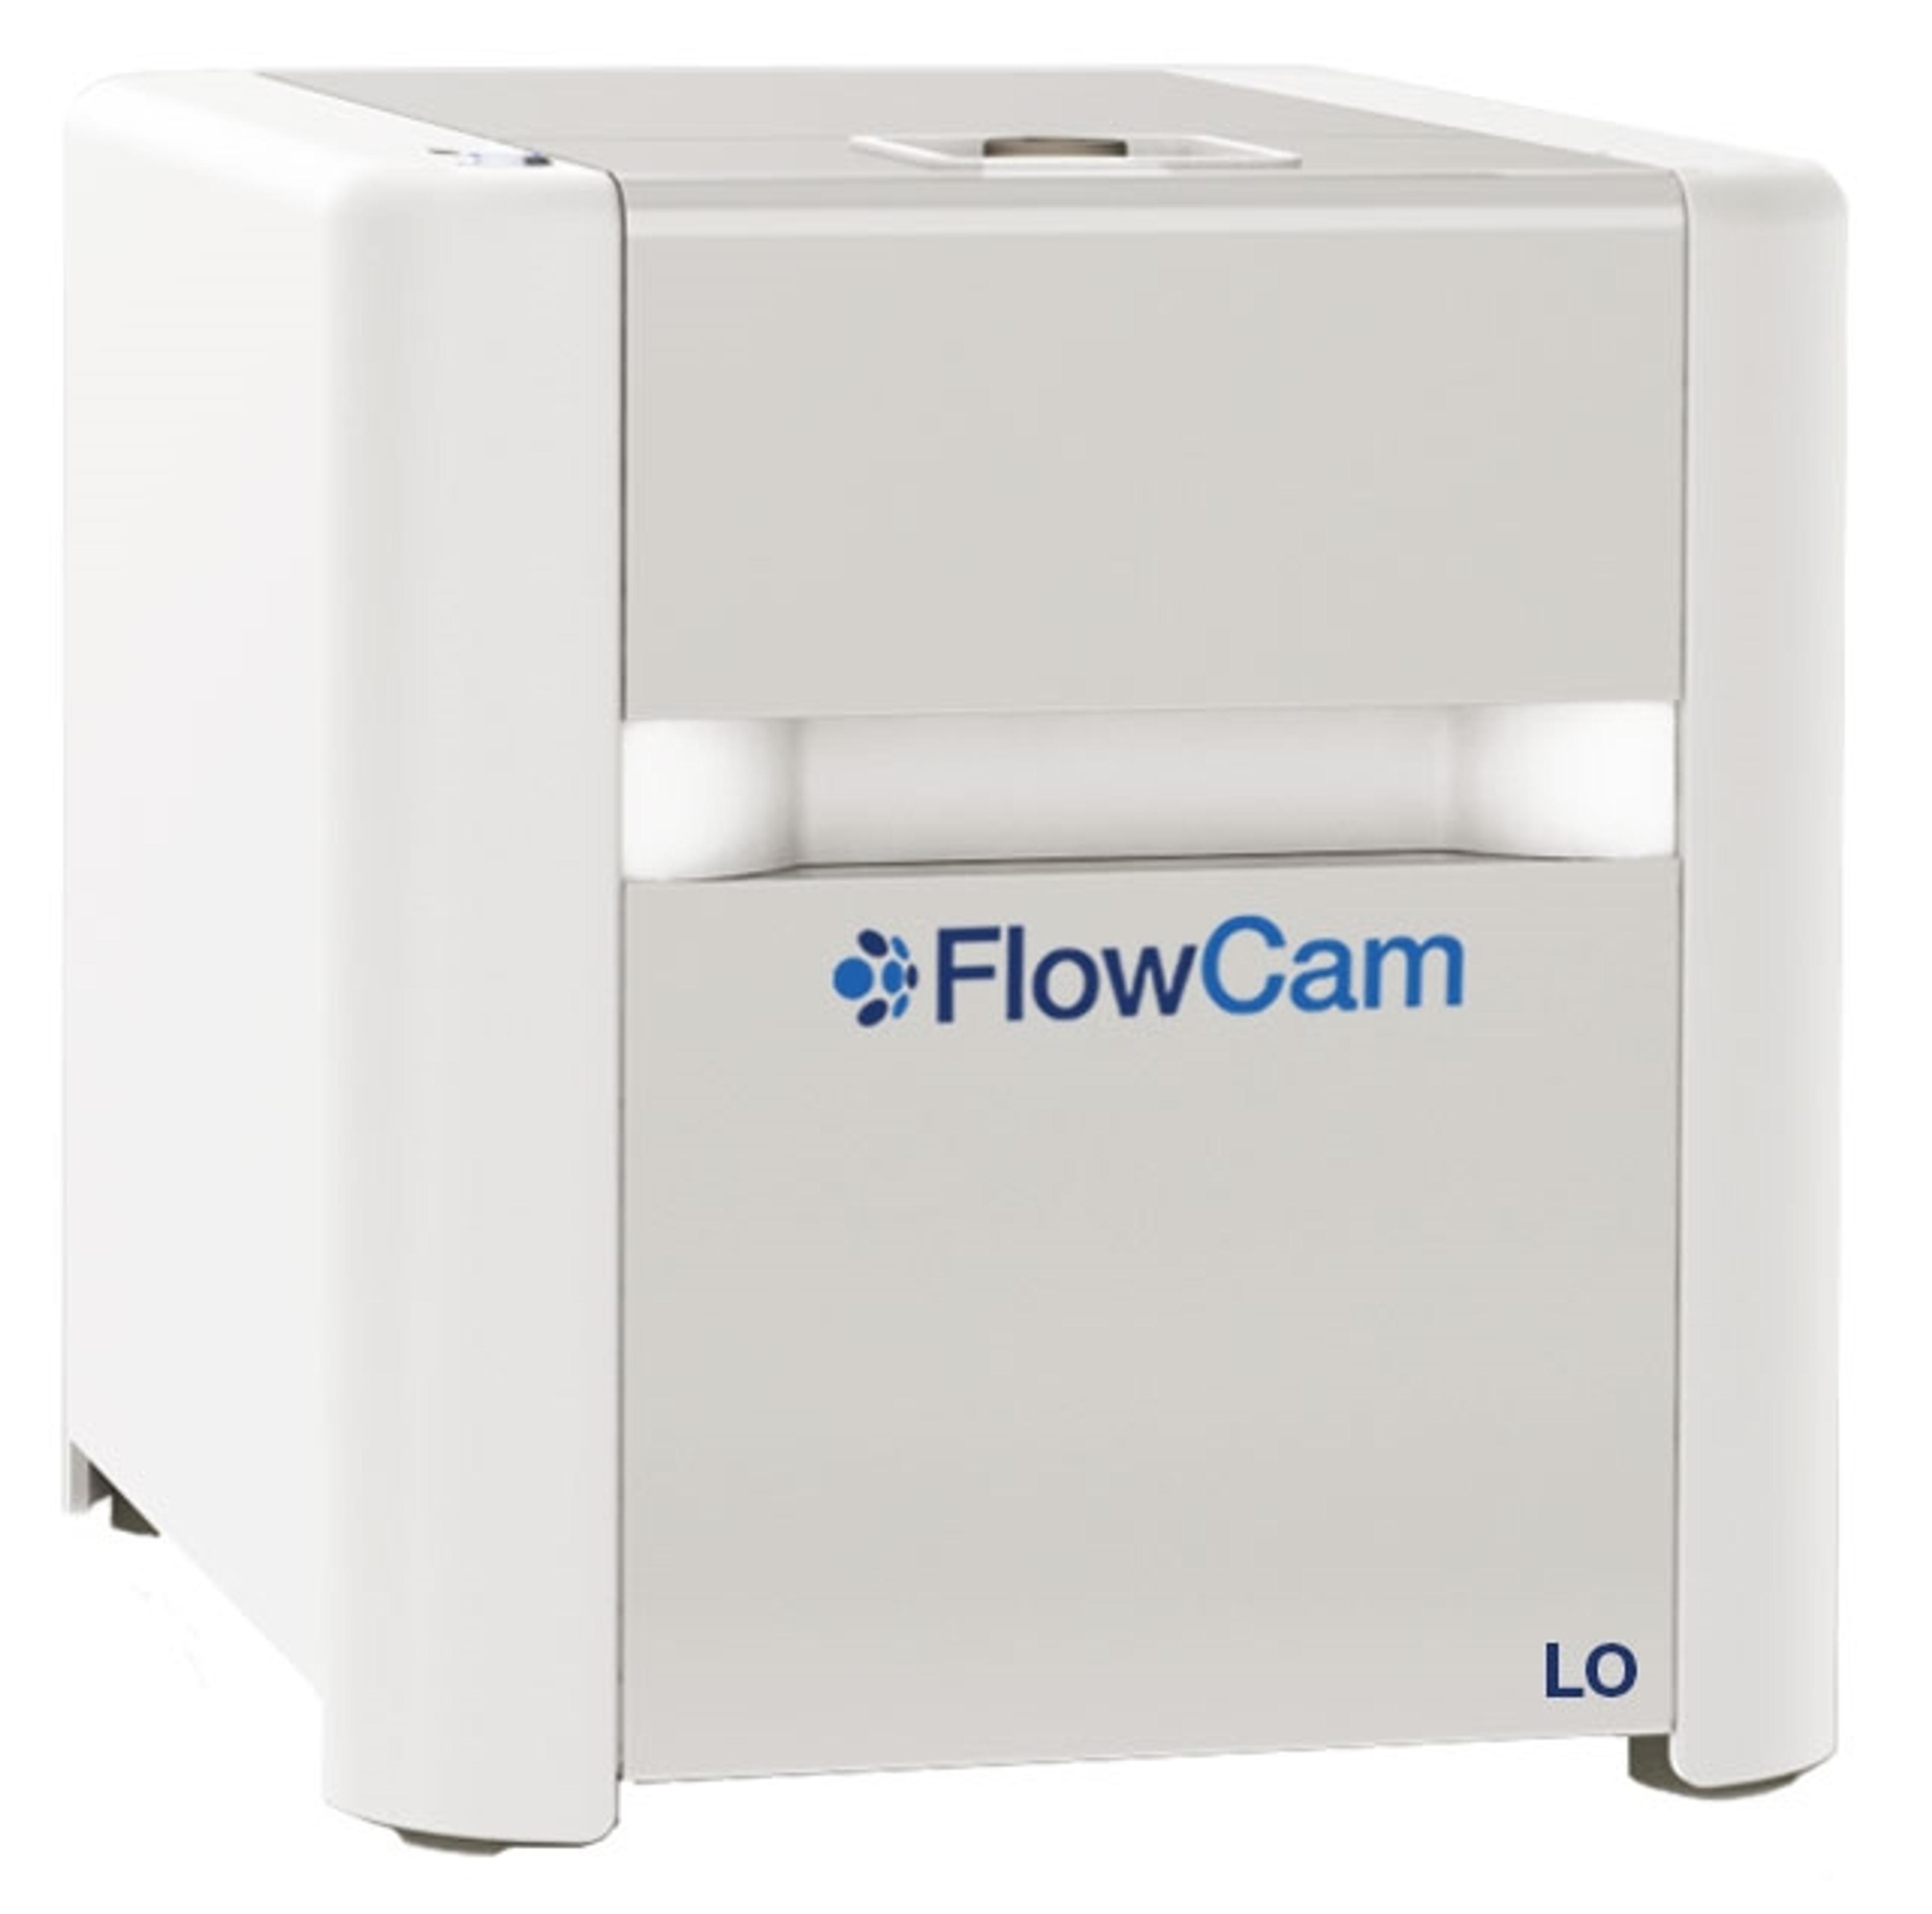 FlowCam LO